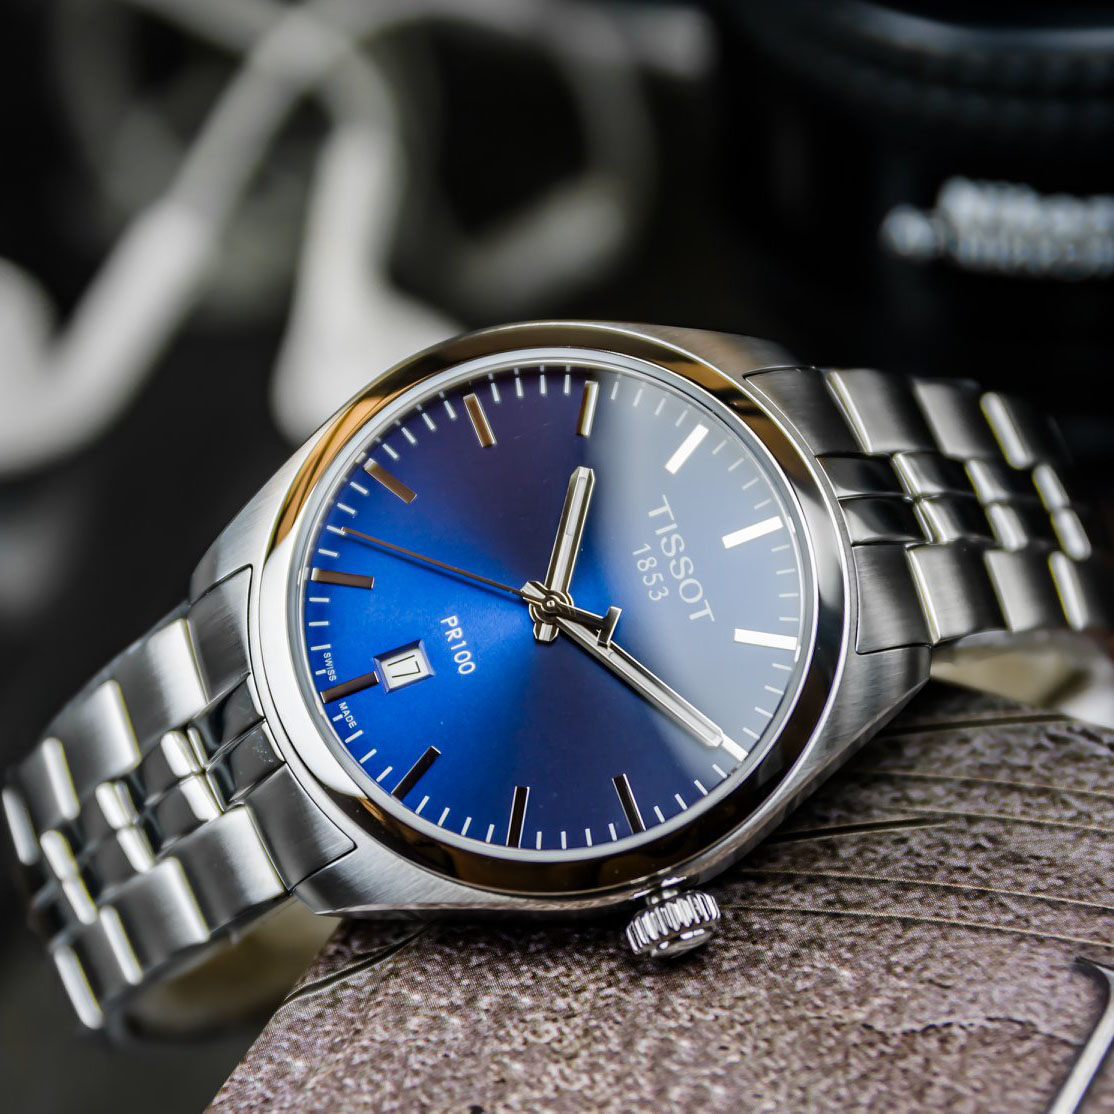 Tissot PR100 Date Blue Dial Men's Watch T101.410.11.041.00 xách tay chính  hãng giá rẻ bảo hành dài - Đồng hồ nam - Senmix